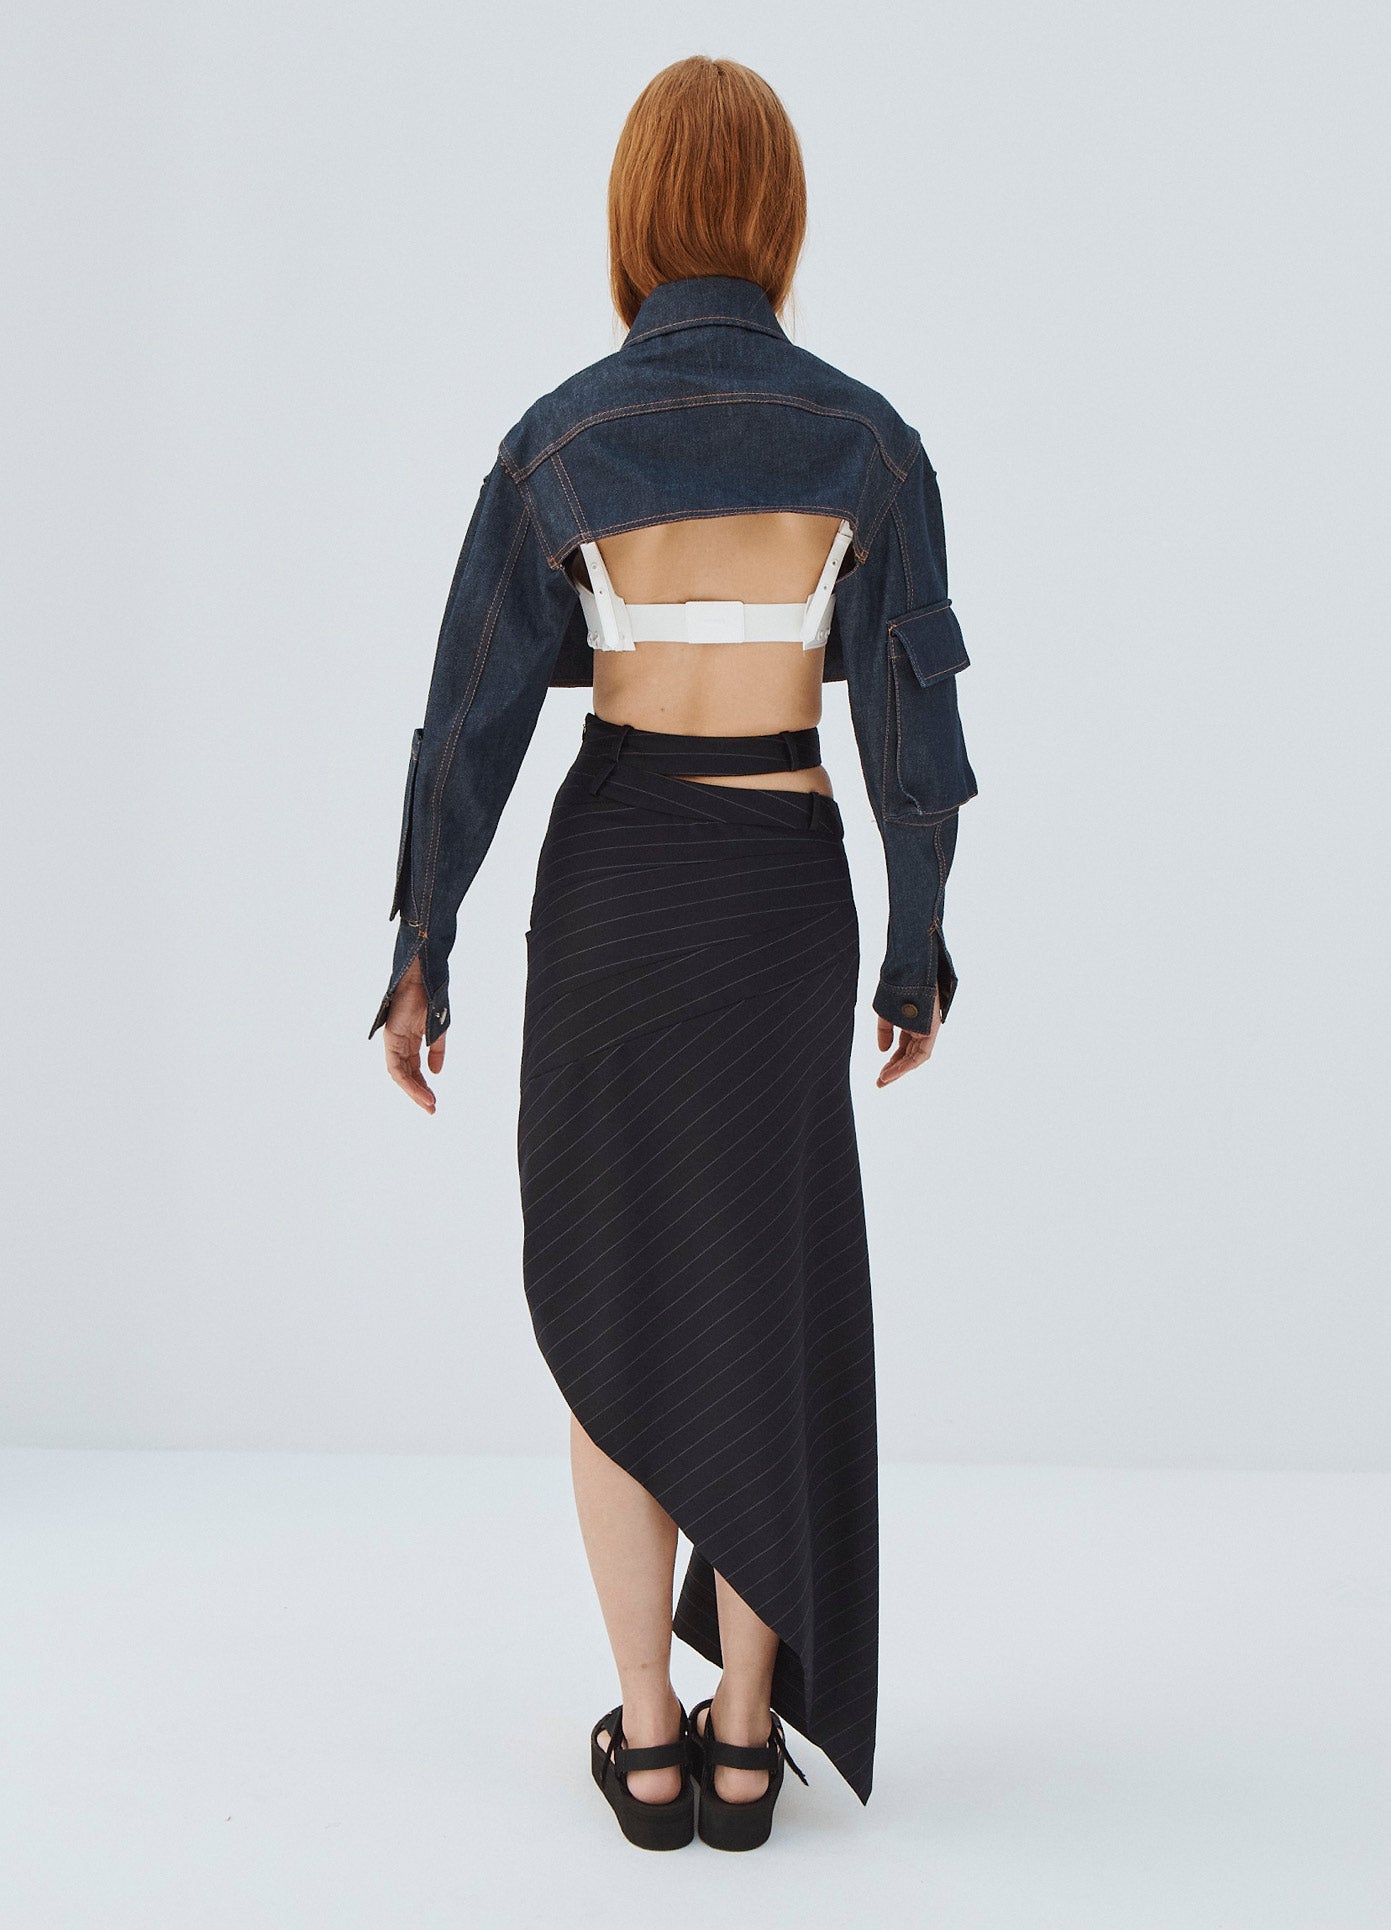 MONSE Double Waistband Asymmetrical Skirt in Midnight on Model Full Back View